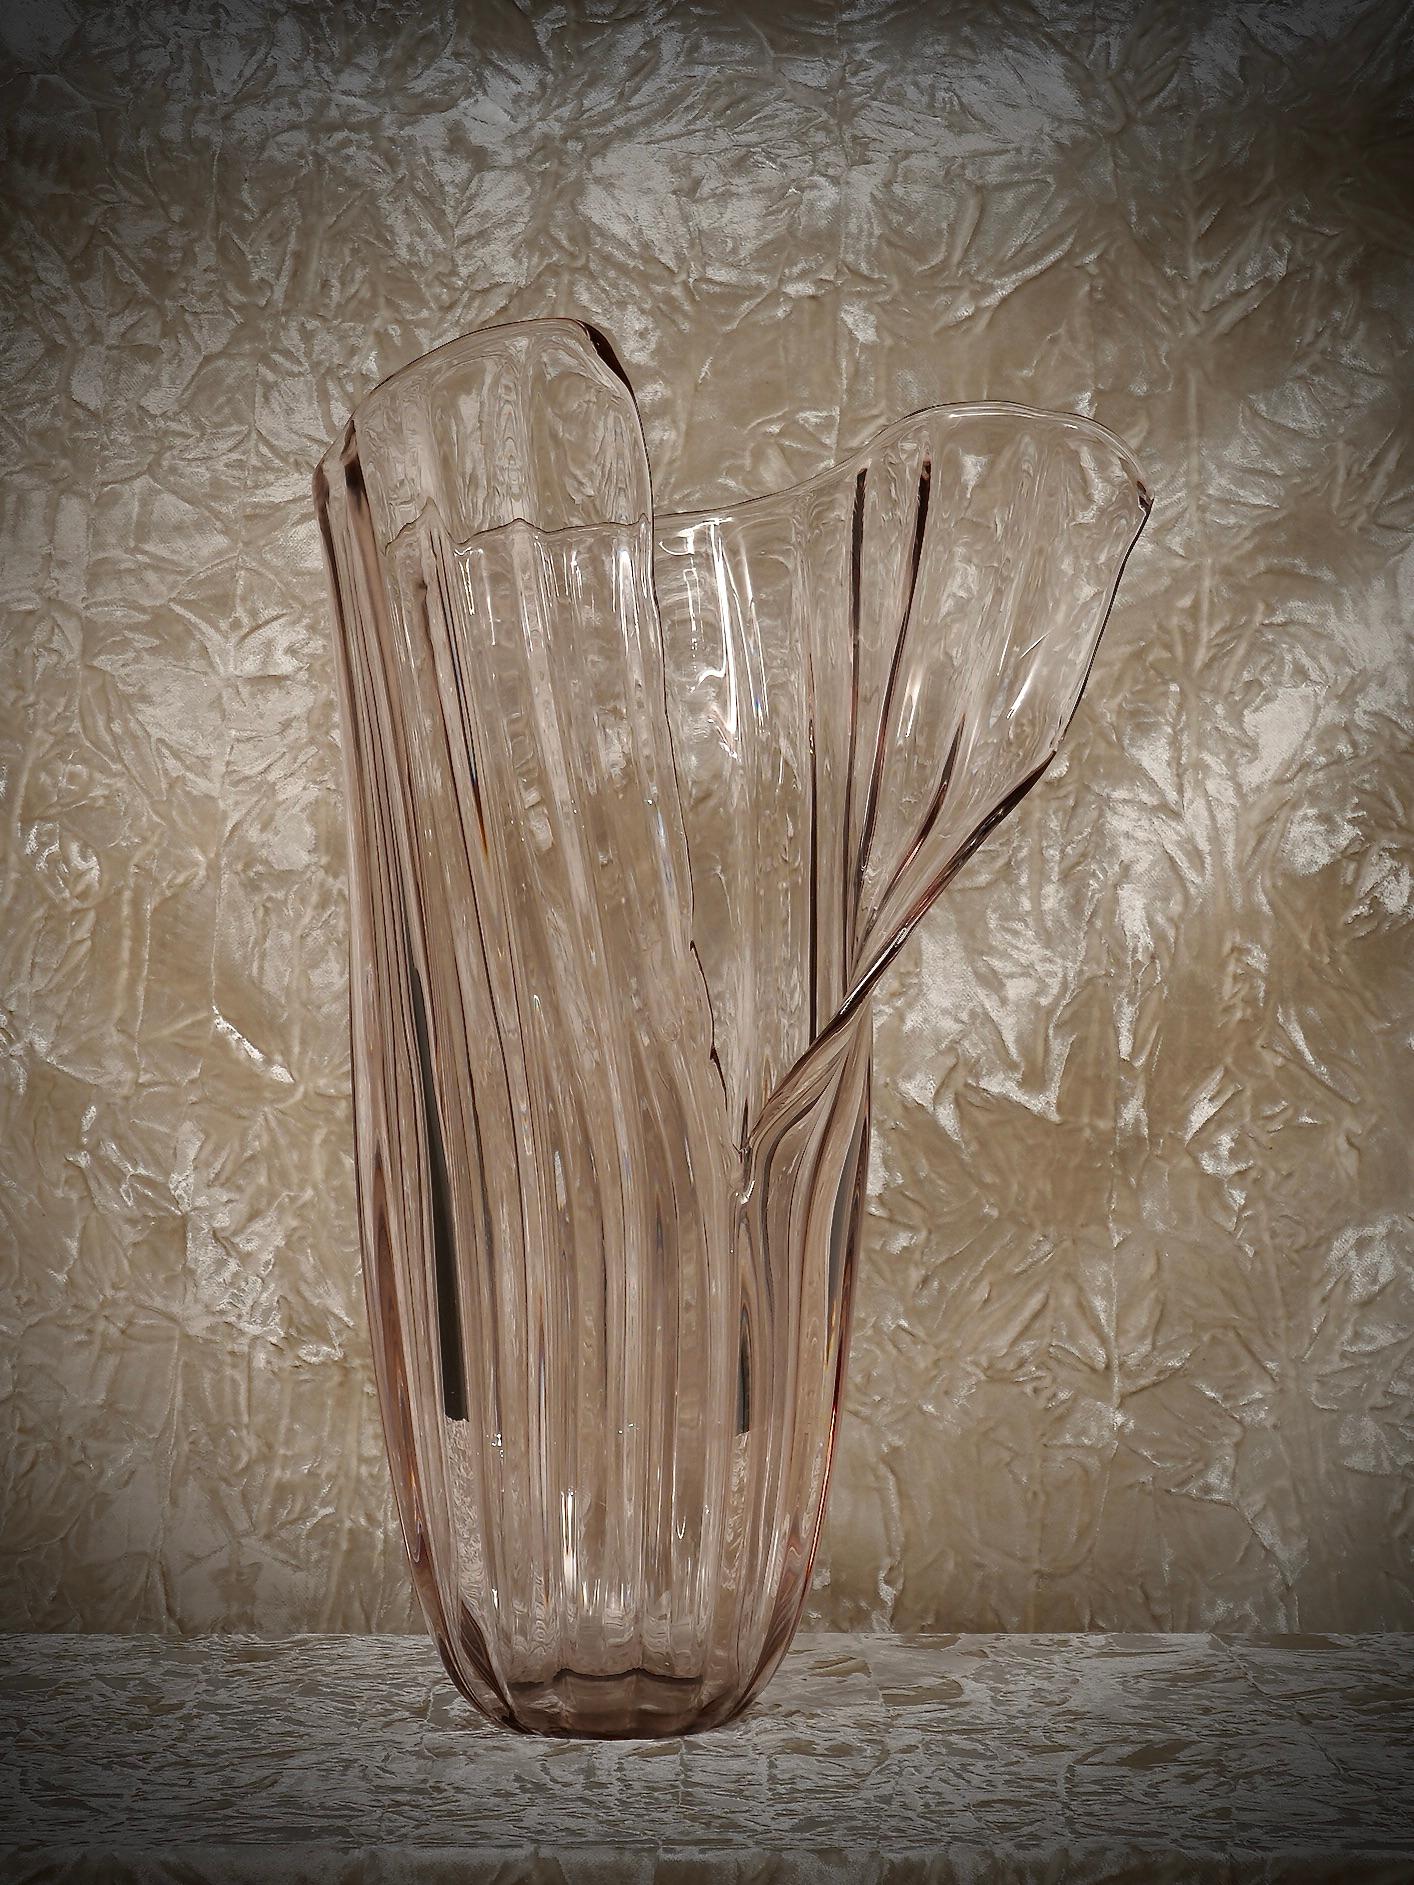 Magnifique vase de la manufacture de Murano, design particulier ouvert à l'avant. Léger, fin et délicat, on dirait qu'un papillon s'est posé dessus.

Le vase est de grande taille et présente des nervures verticales. La base étroite et épaisse du